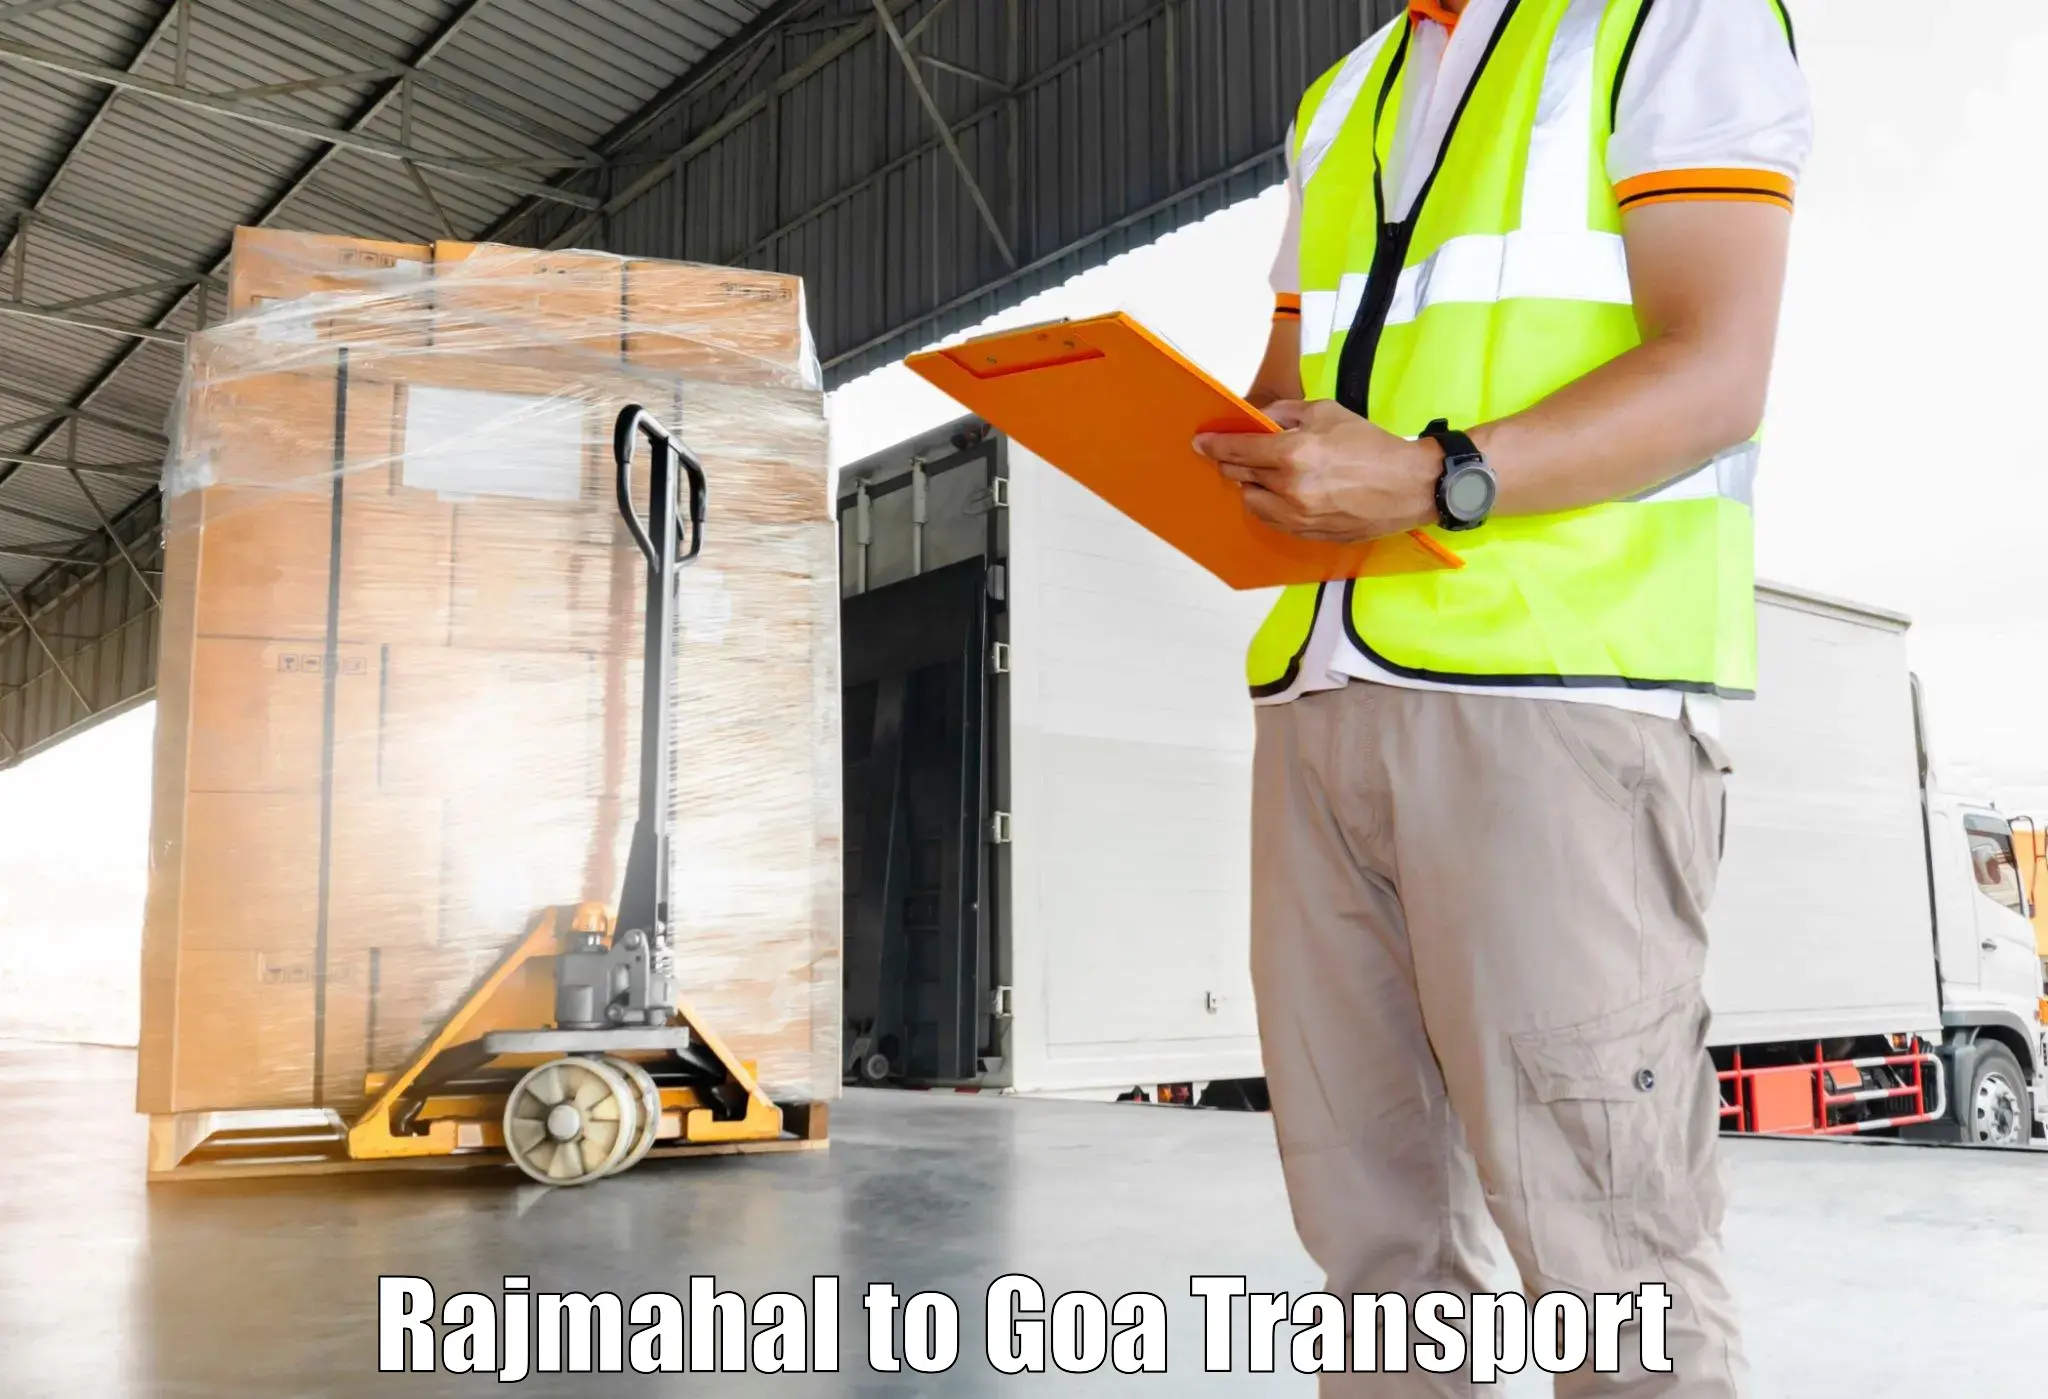 Cargo train transport services Rajmahal to Vasco da Gama